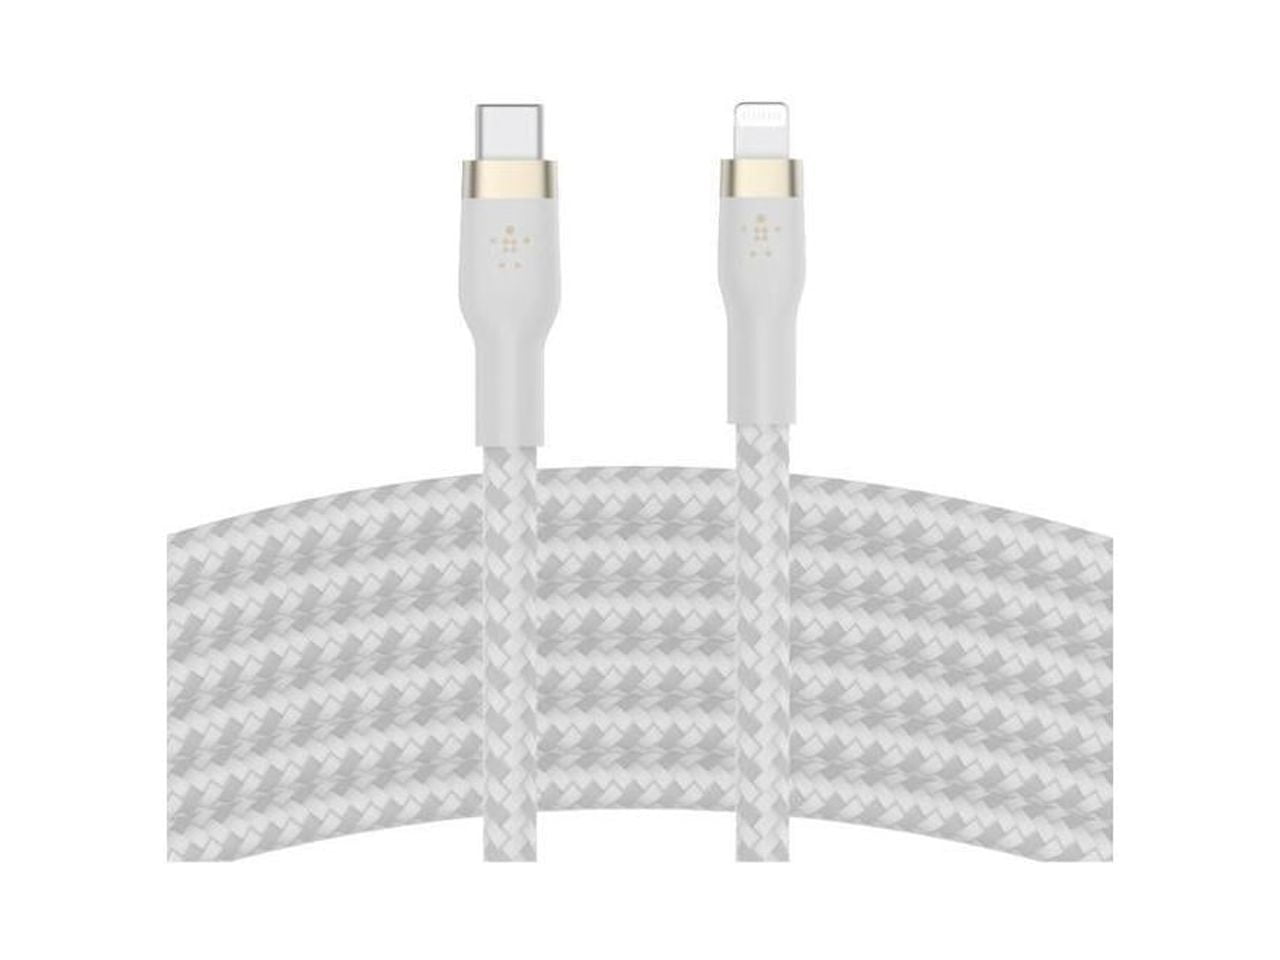 Câble Belkin USB‑A BOOST↑Charge Pro Flex avec connecteur Lightning (1 m) -  Blanc - Apple (LU)